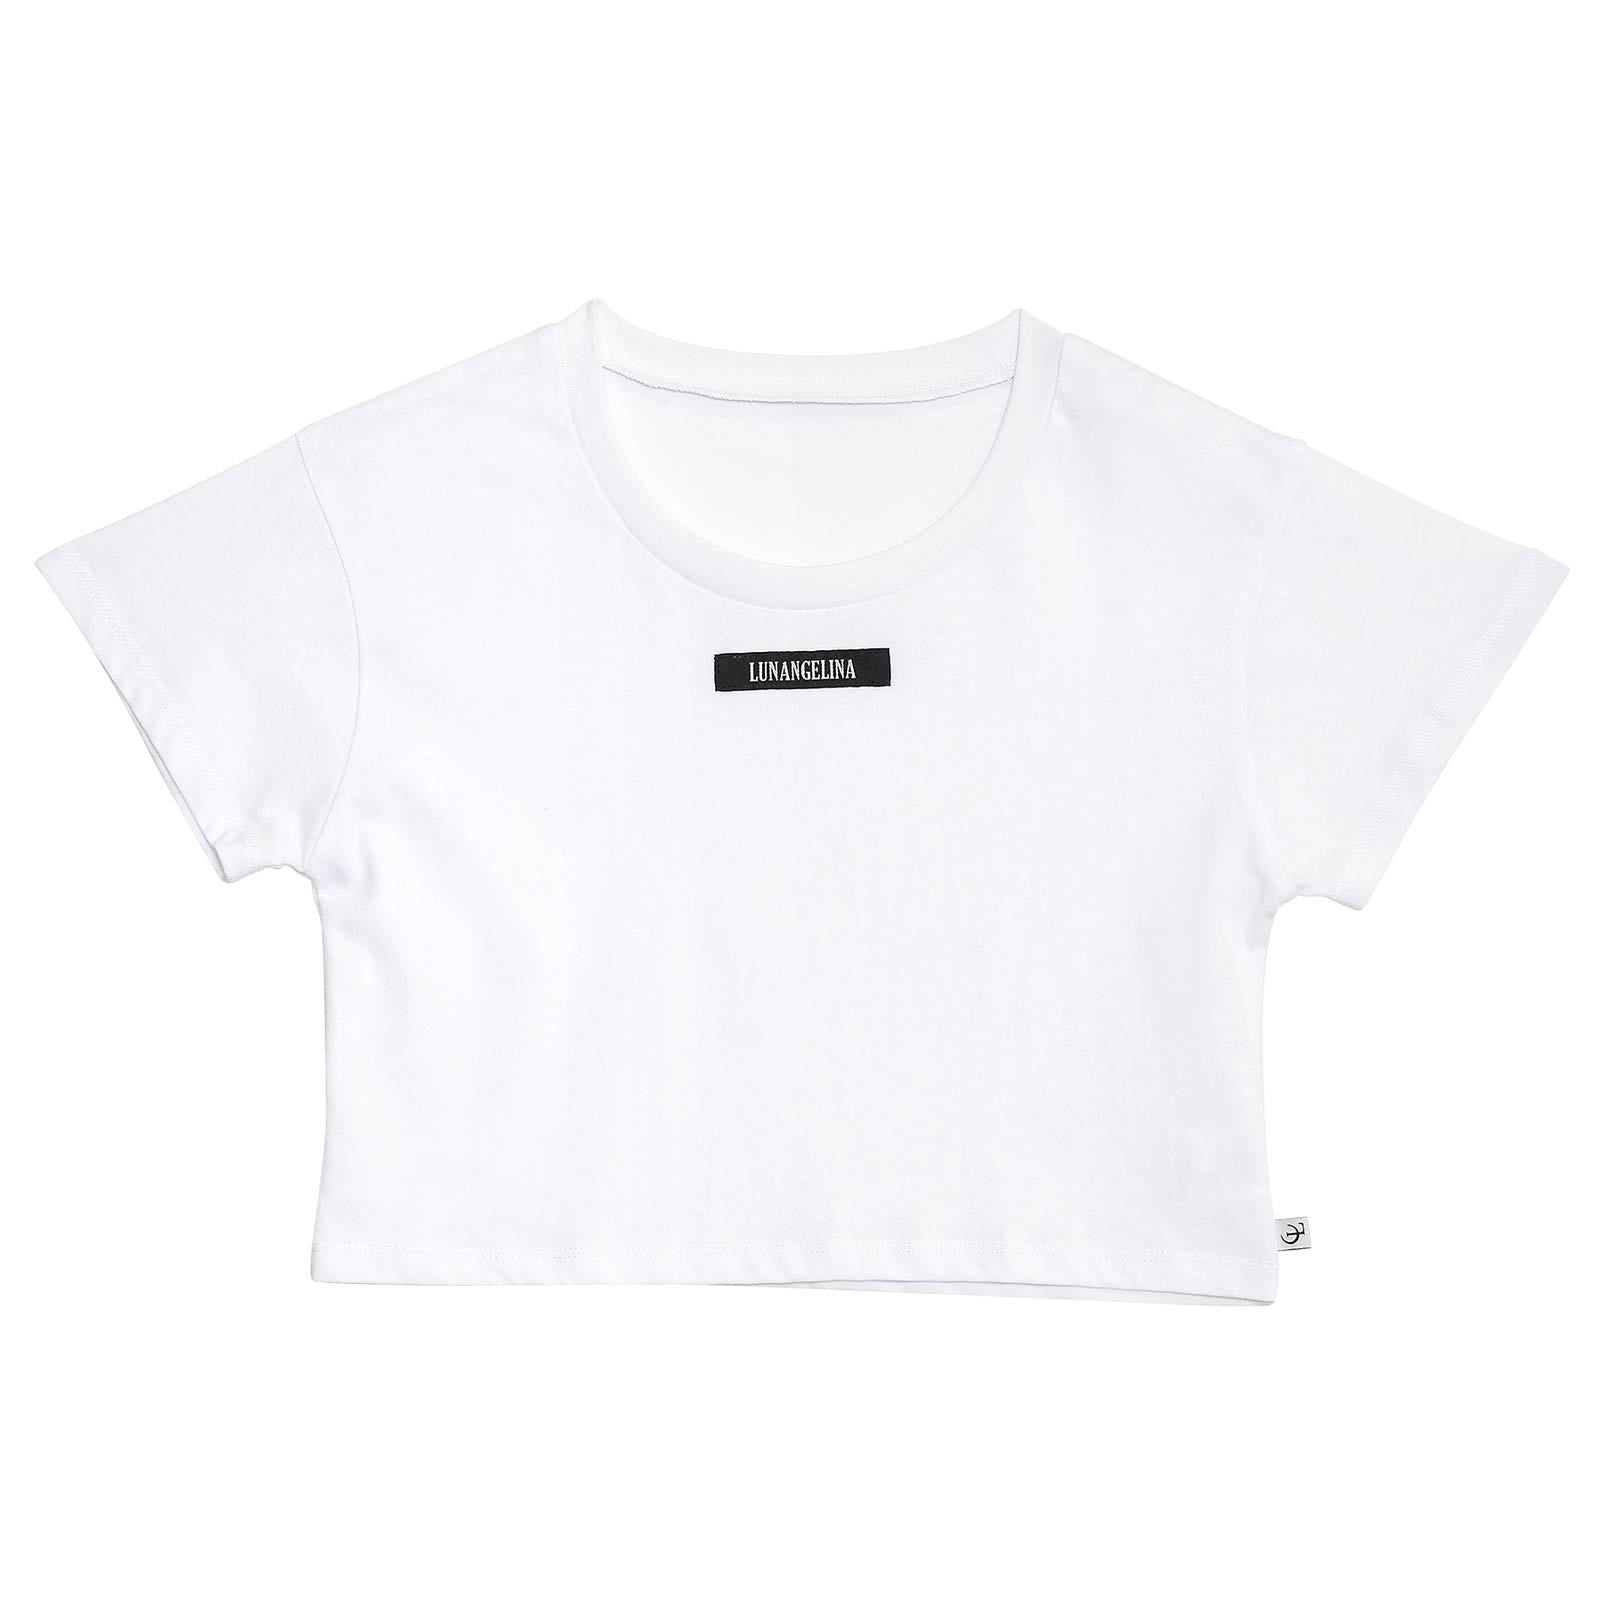 【吉木千沙都(ちぃぽぽ)プロデュース/lunangelina】Minimum Silhouette T-shirt/White